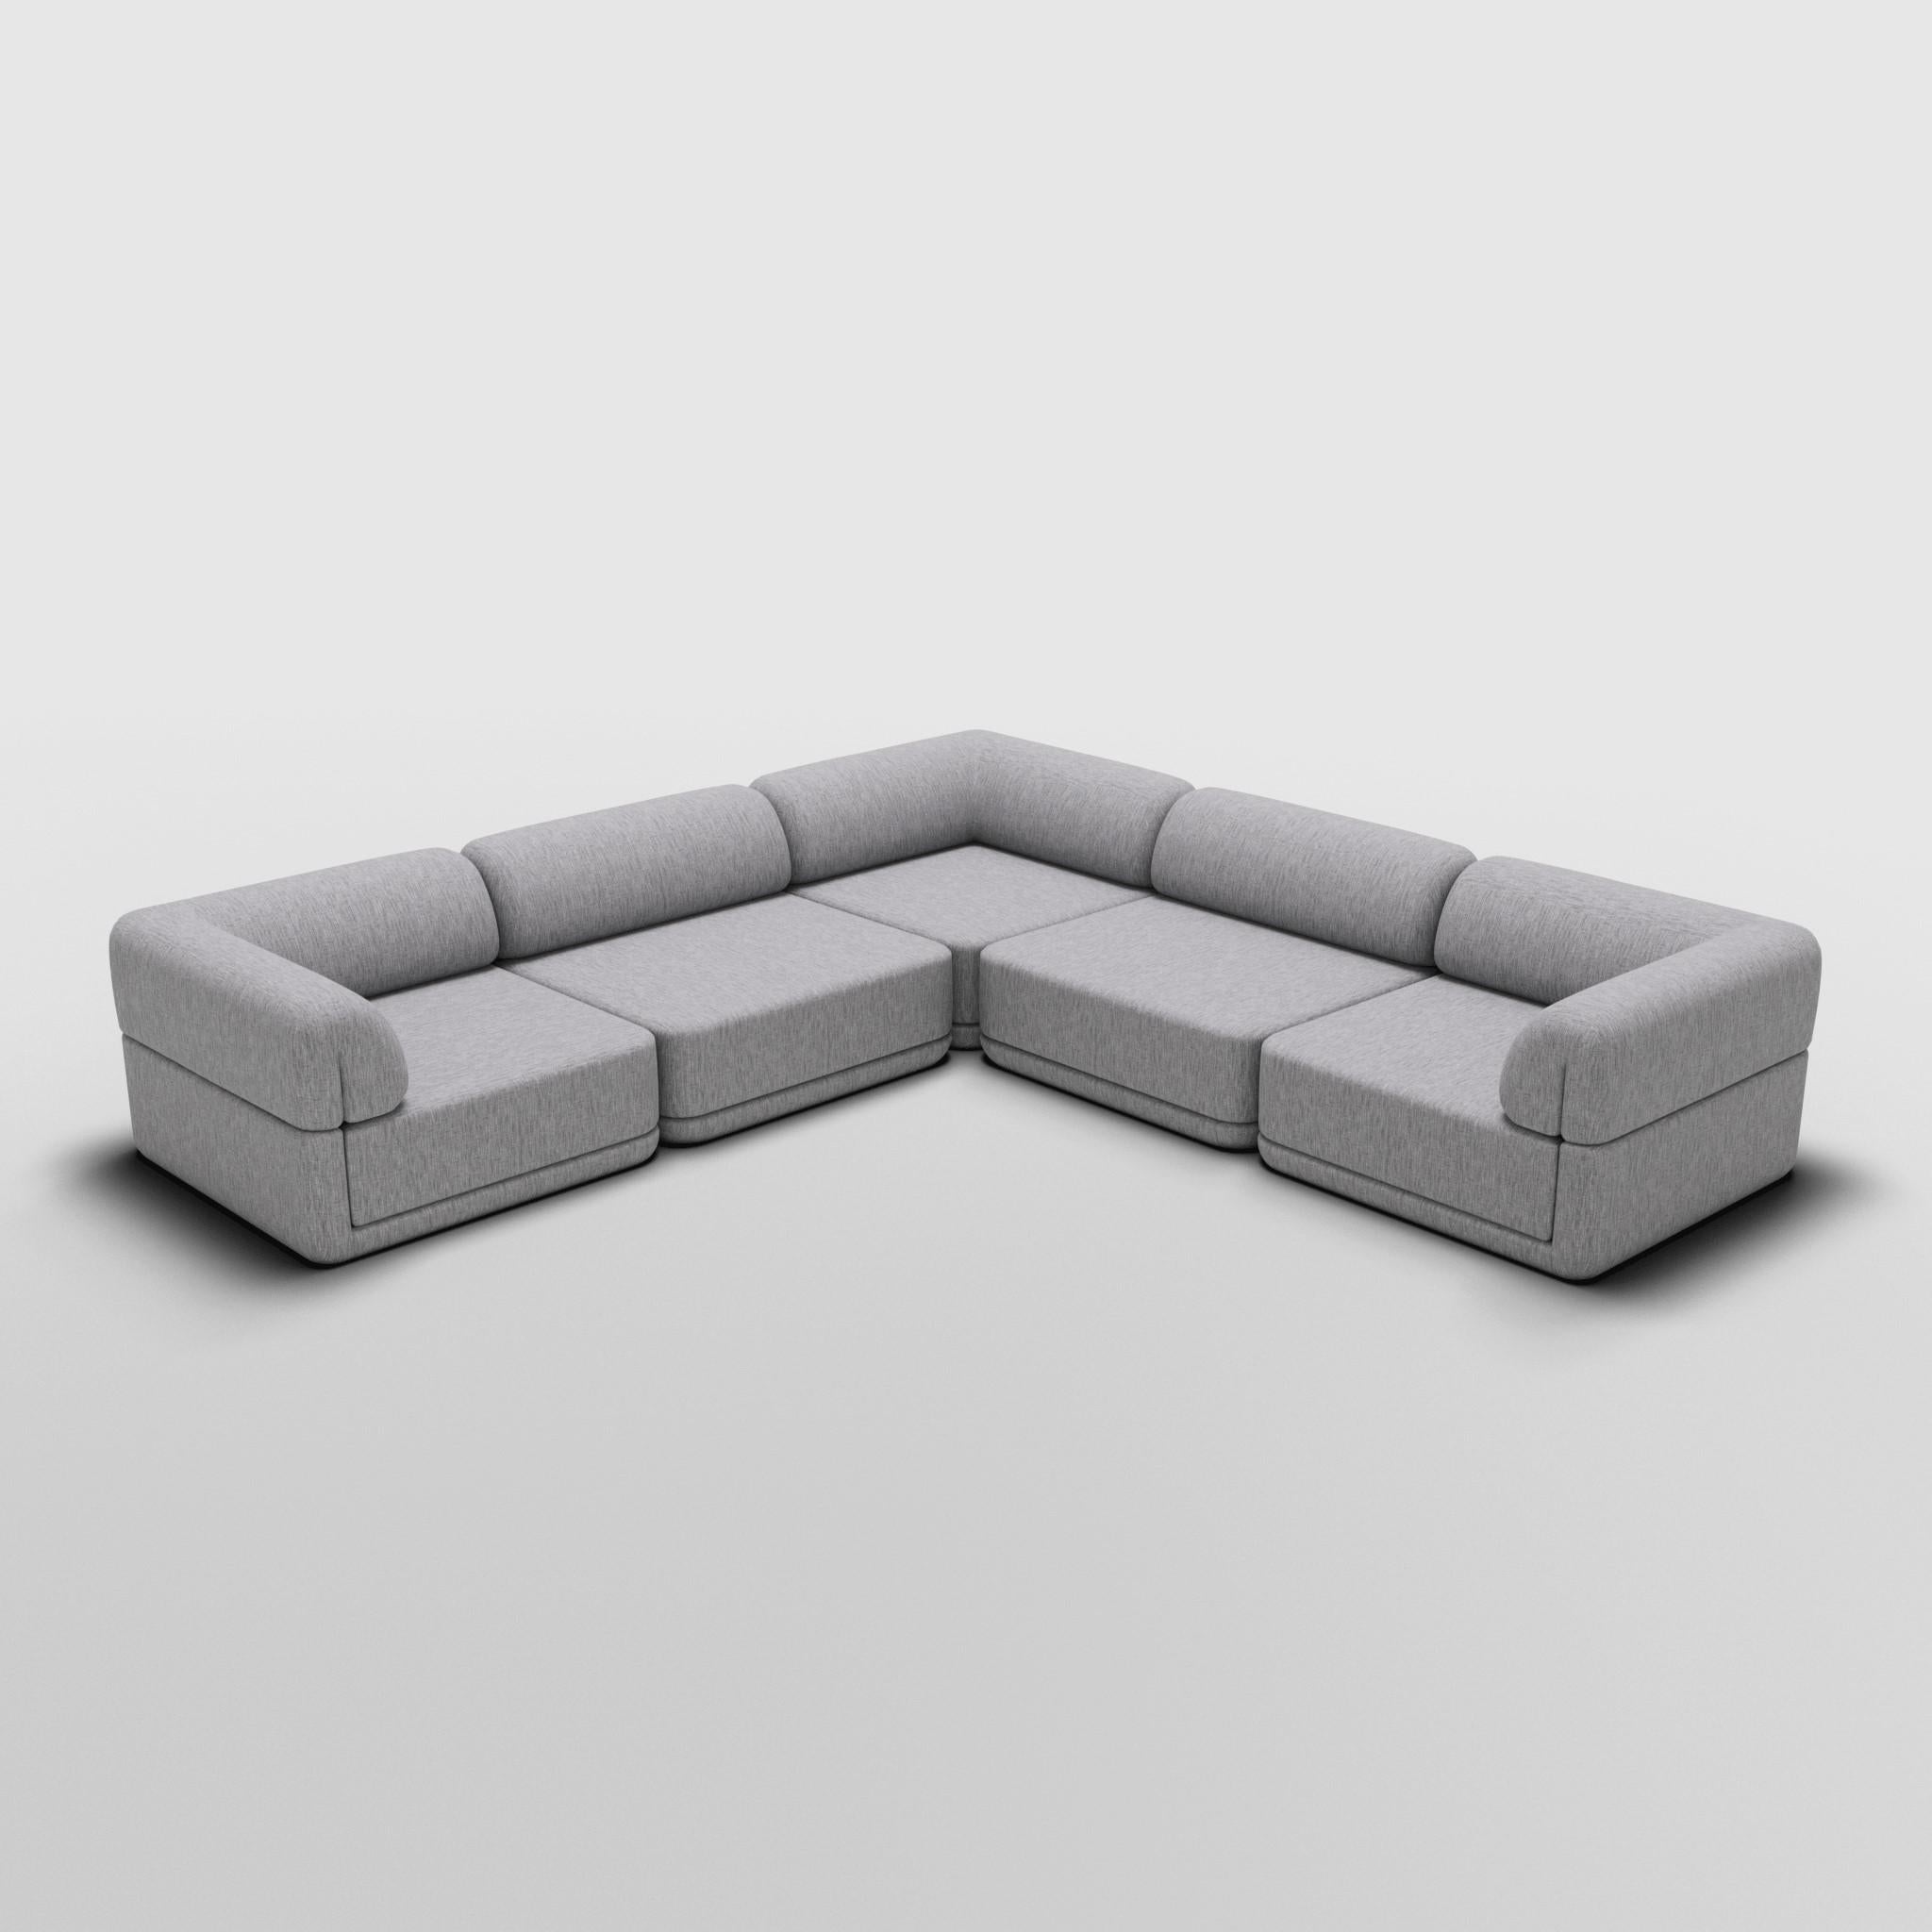 Corner Lounge Sectional - Inspiriert von italienischen Luxusmöbeln der 70er Jahre

Entdecken Sie das Cube Sofa, wo Kunst auf Anpassungsfähigkeit trifft. Das skulpturale Design und der individuell anpassbare Komfort schaffen unendliche Möglichkeiten